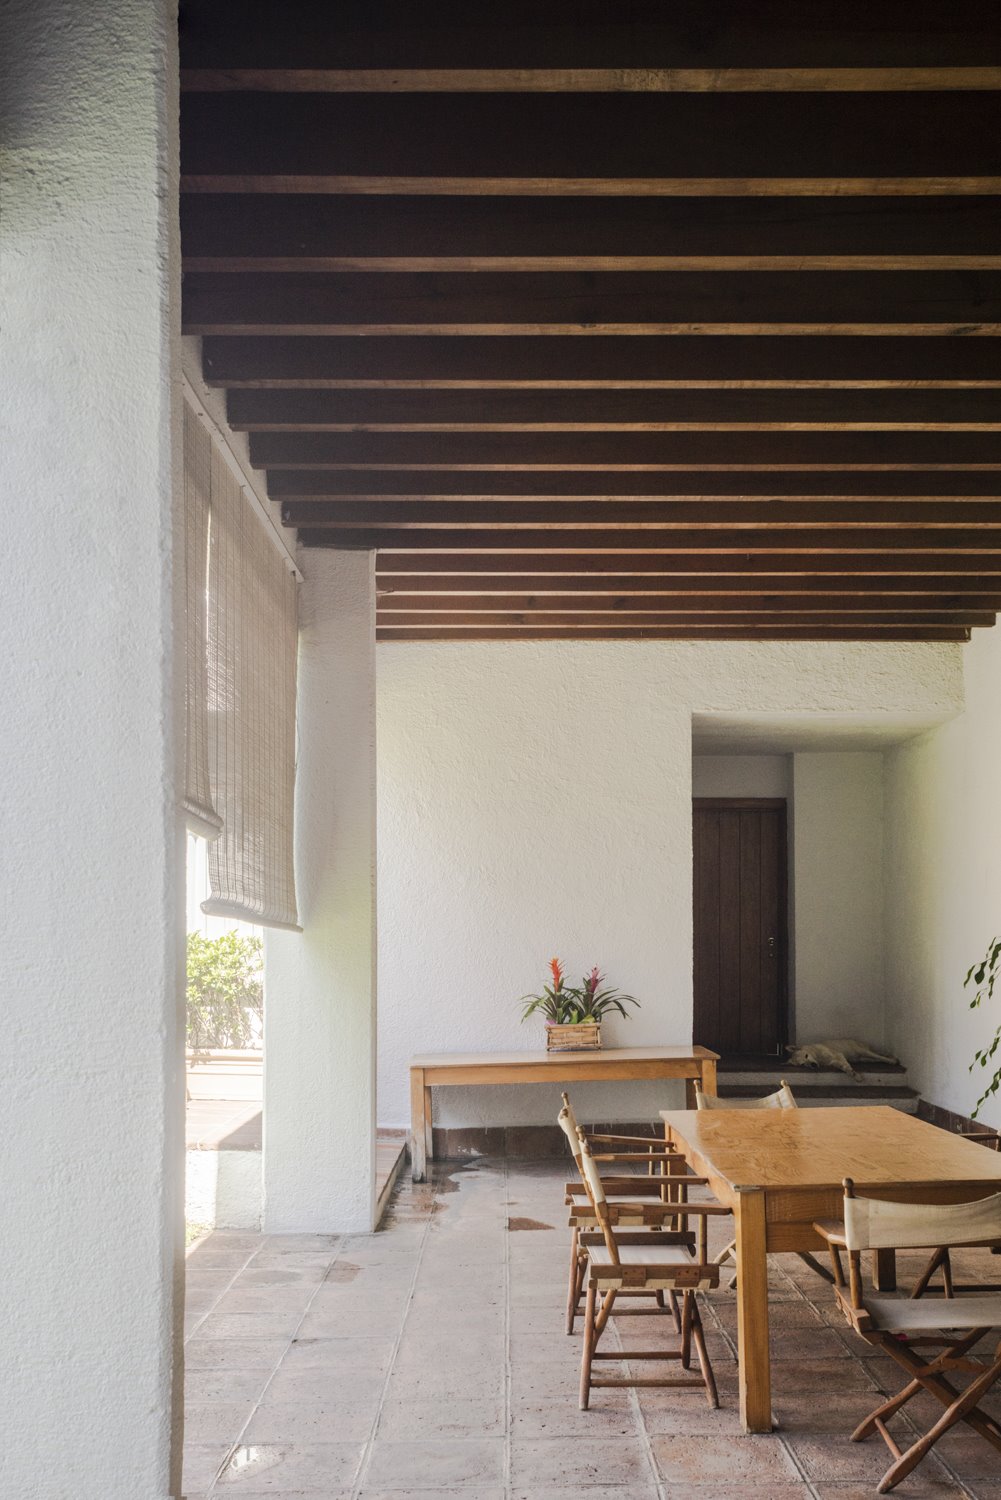 Patio con vigas y una mesa de comedor de un edificio del arquitecto mexicano Luis Barragan